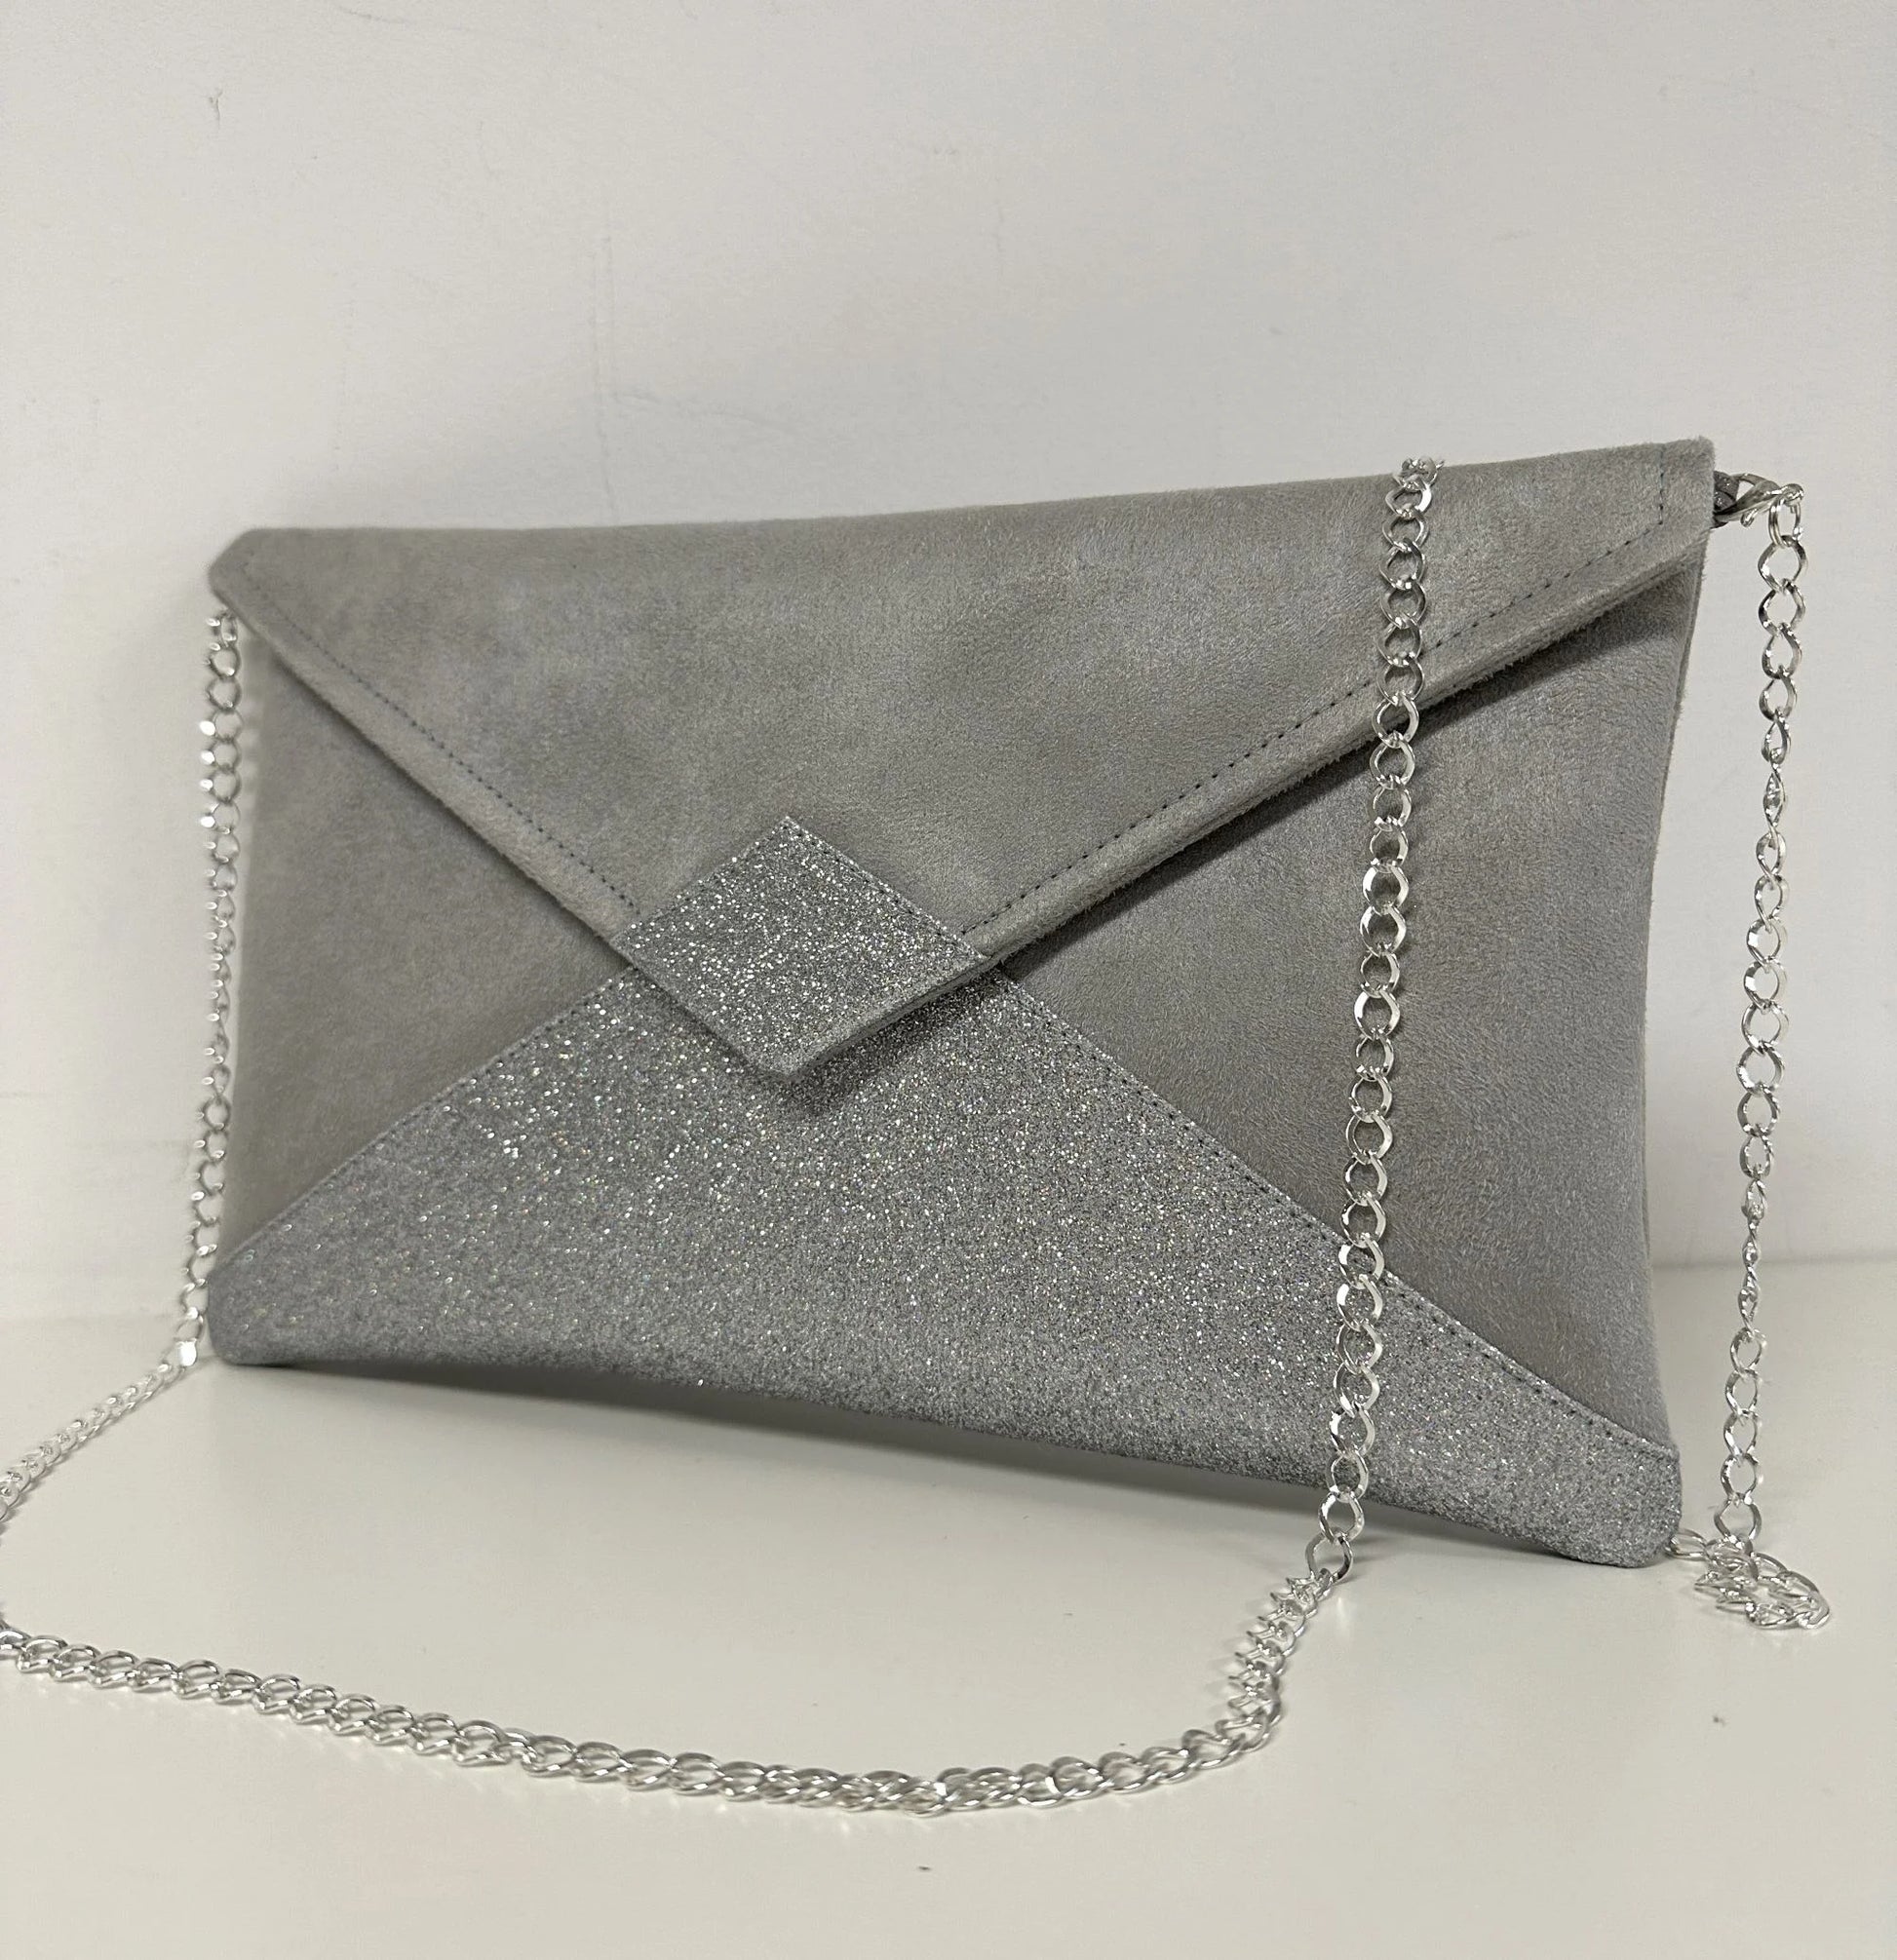 Le sac pochette Isa gris perle à paillettes argentées, en face avant.